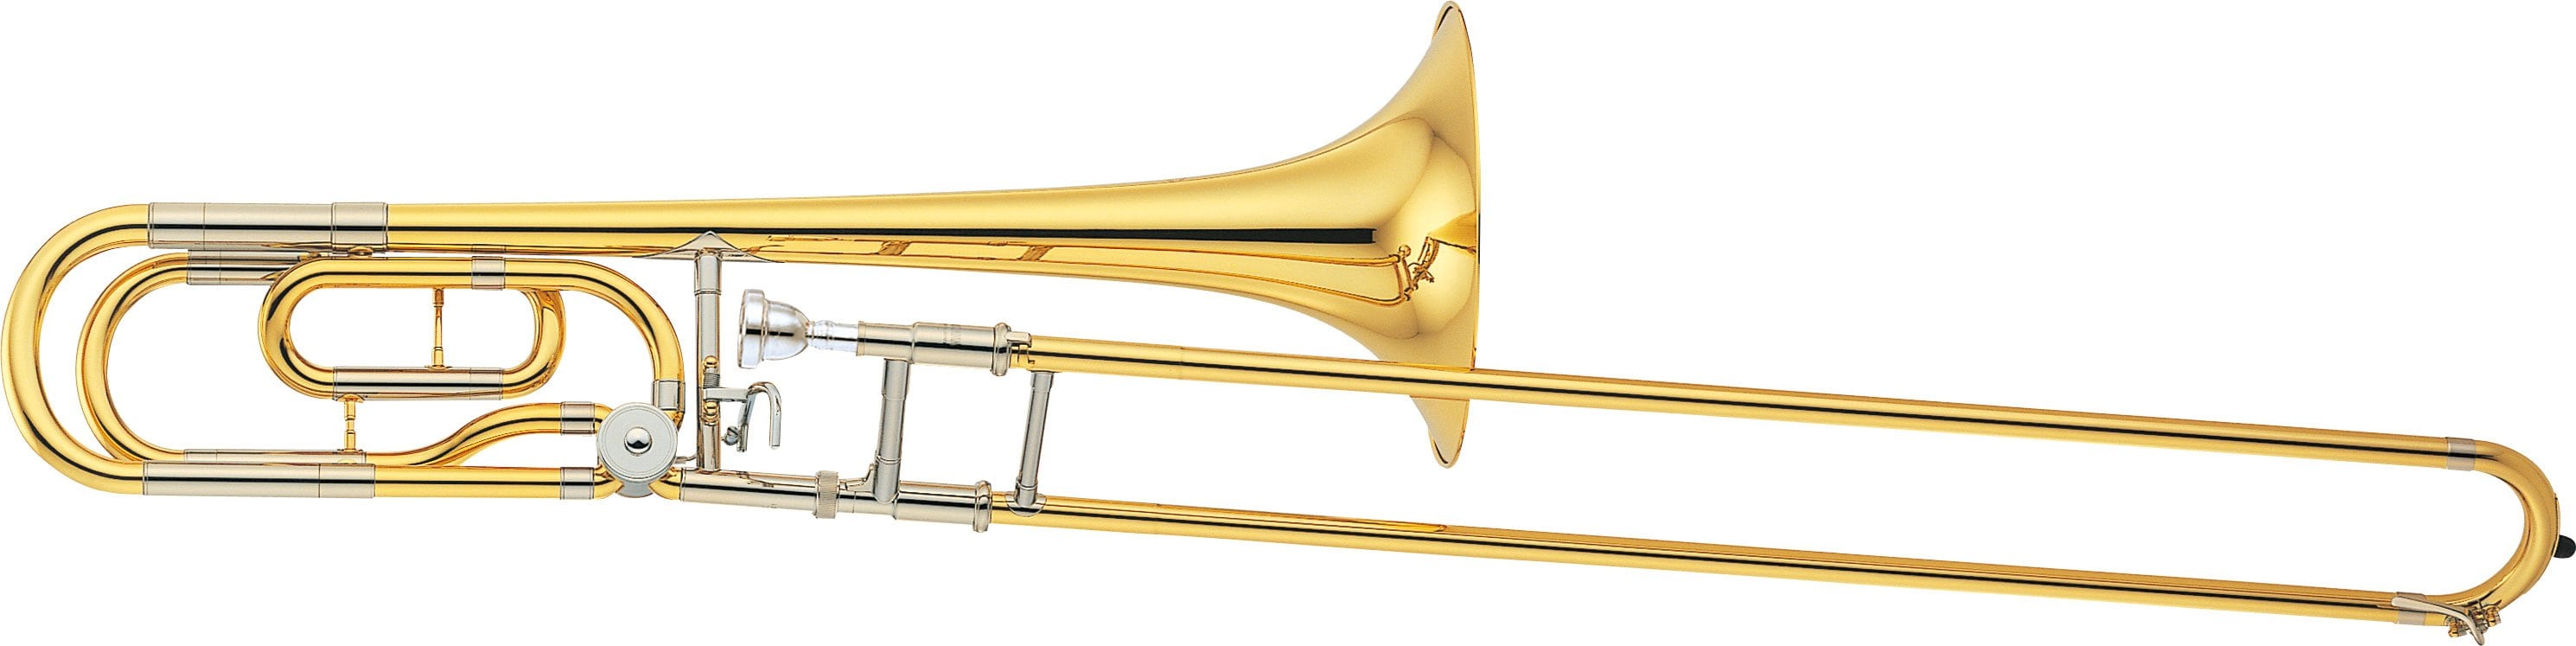 YSL-620/640 - Overview - Trombones - Brass & Woodwinds - Musical